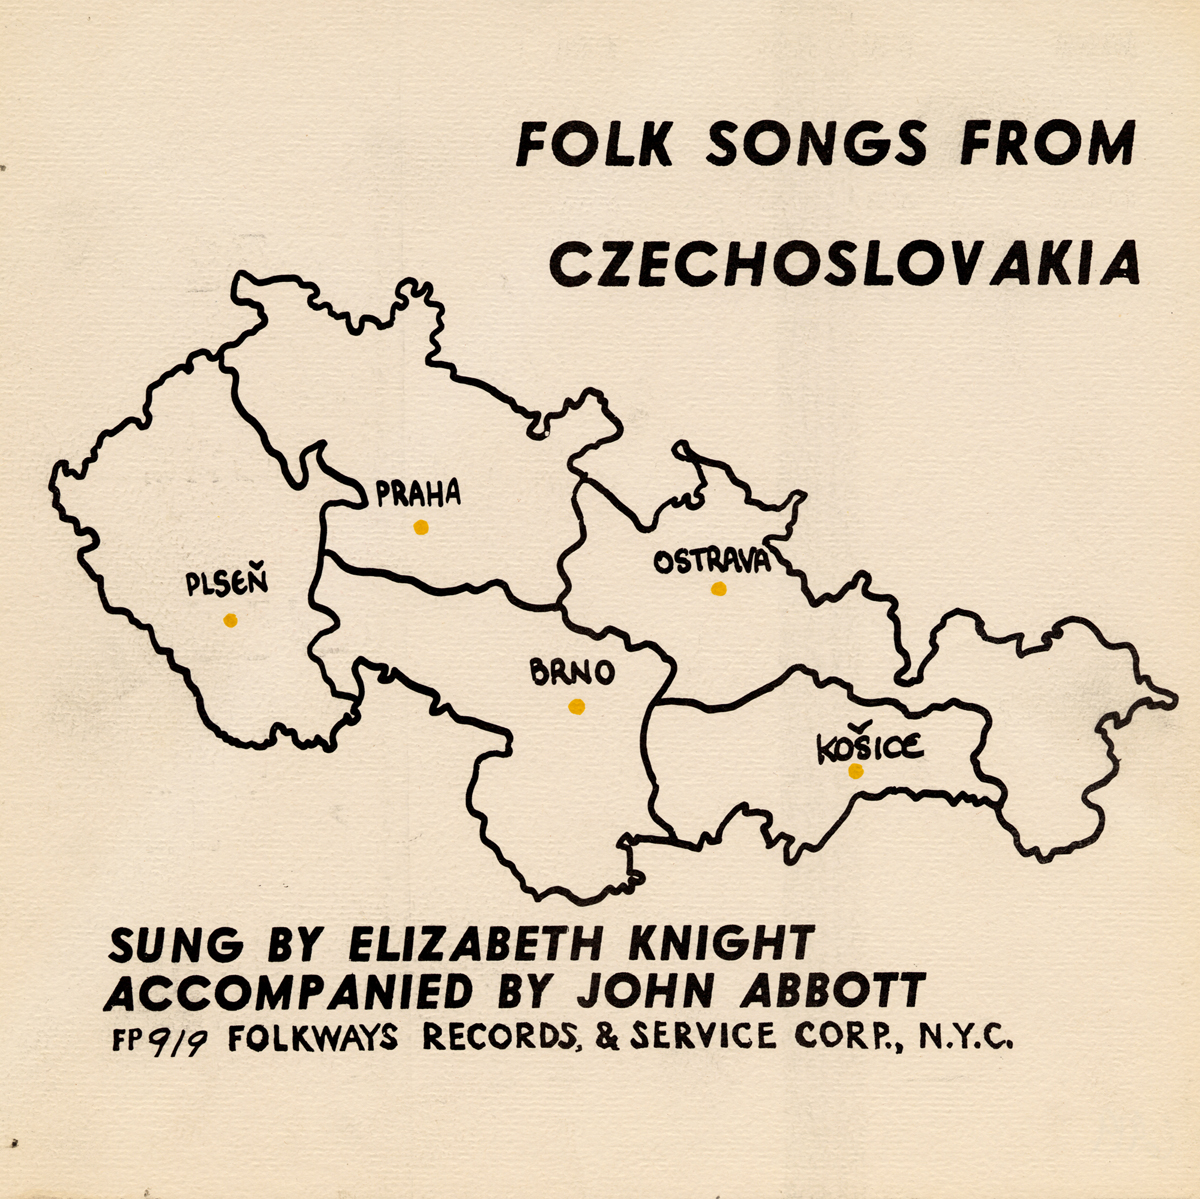 FOLK SONGS FROM CZECHOSLOVAKIA